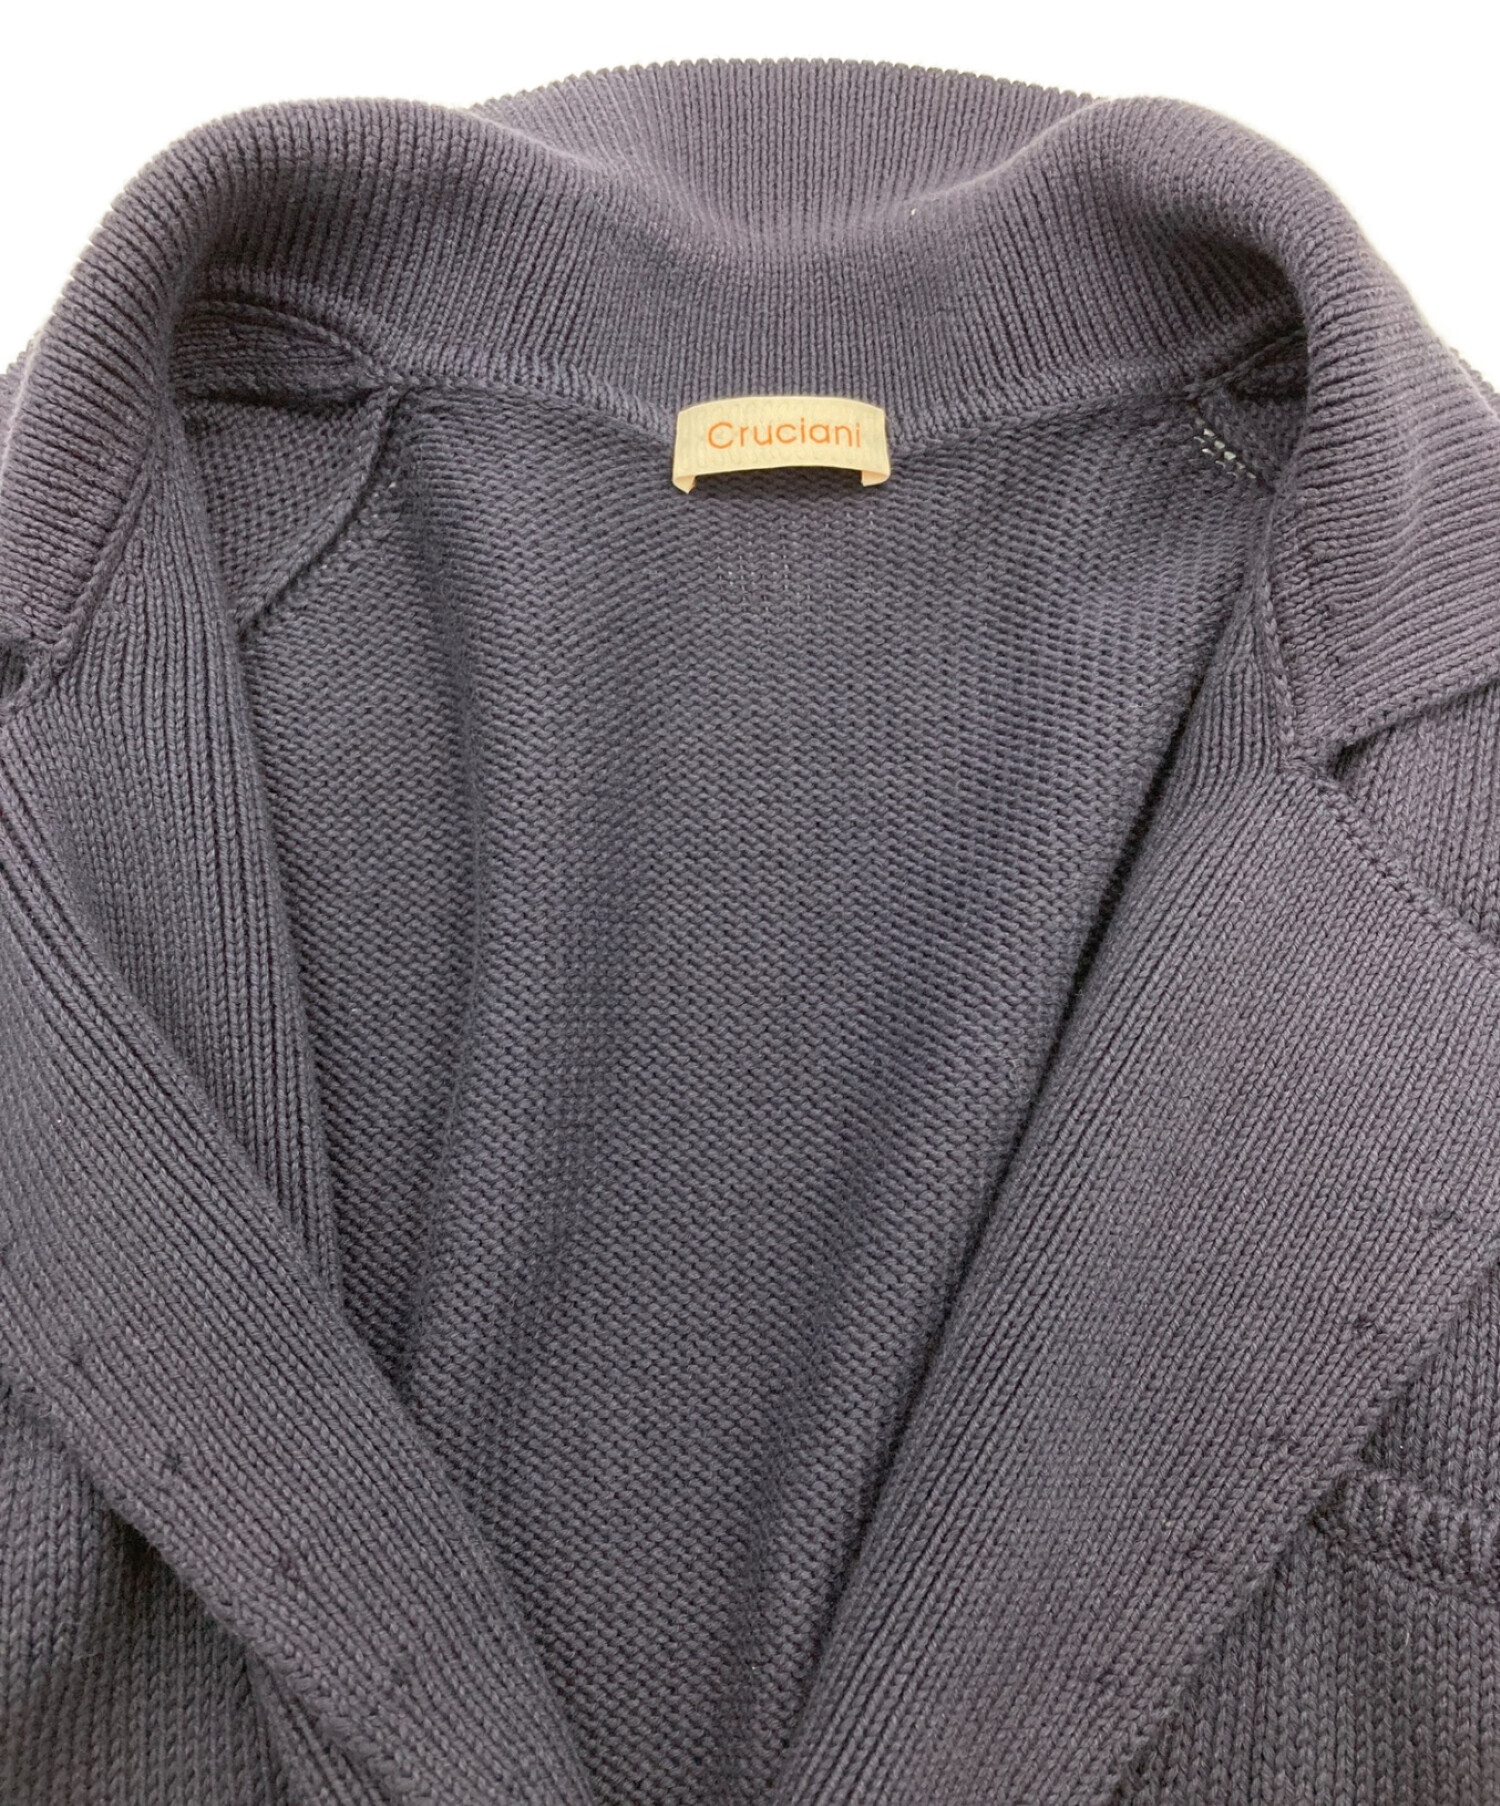 半額販壳Cruciani ウール ニット テーラードジャケット ネイビー クルチアーニ レディース 42 長袖 セーター カーディガン イタリア製 店舗受取可 Lサイズ